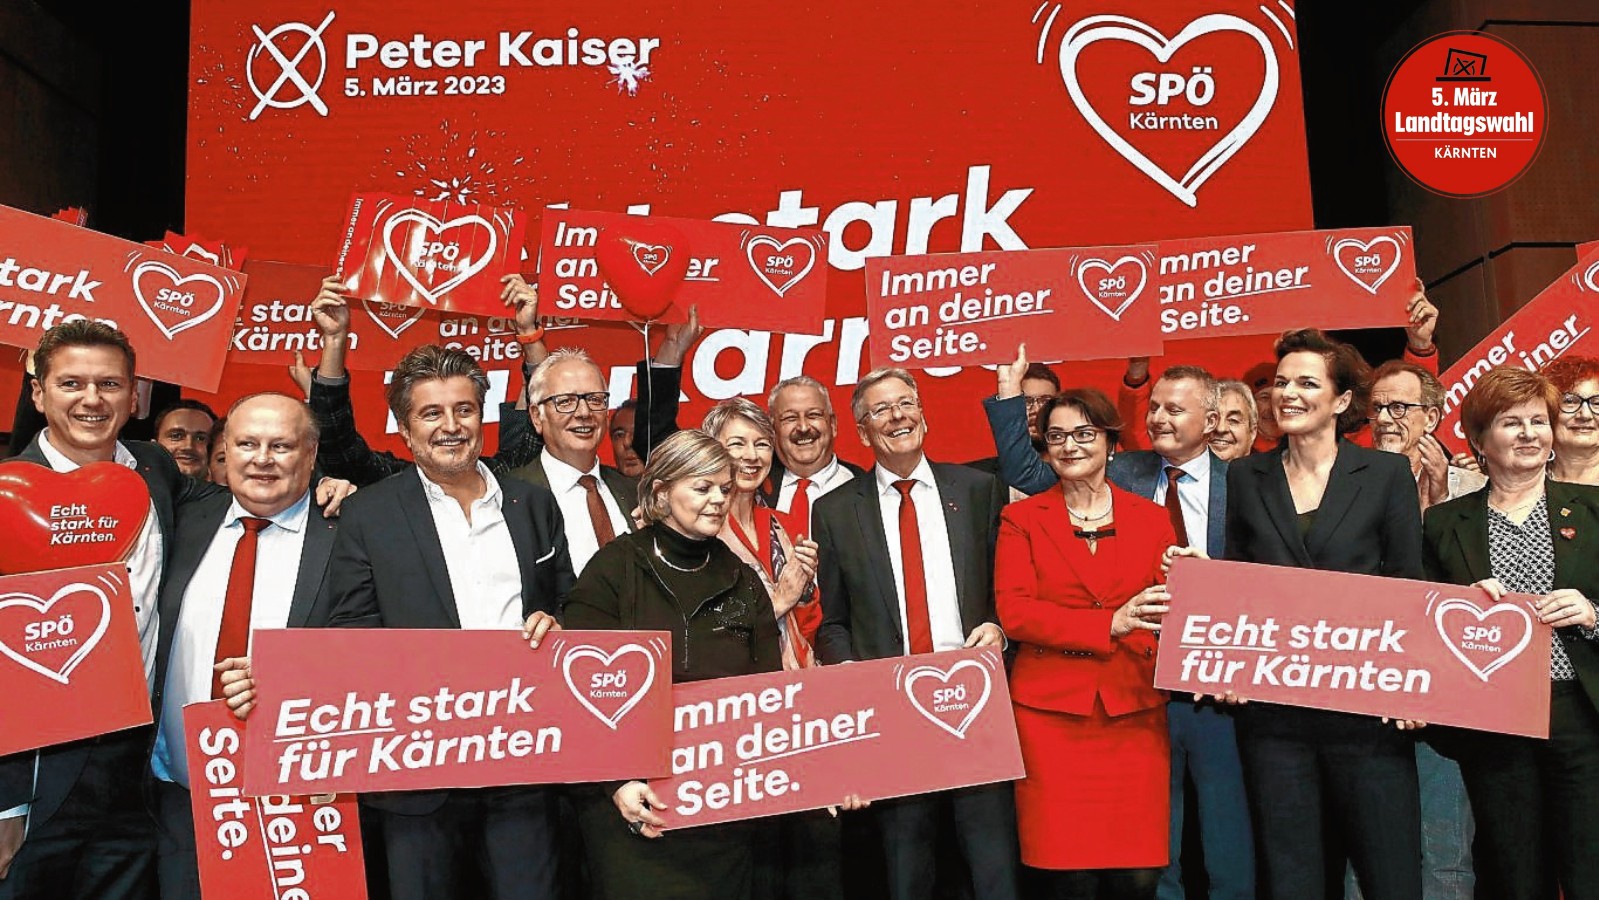 Die Roten starten den Wahlmarathon. (Bild: Gerd Eggenberger )